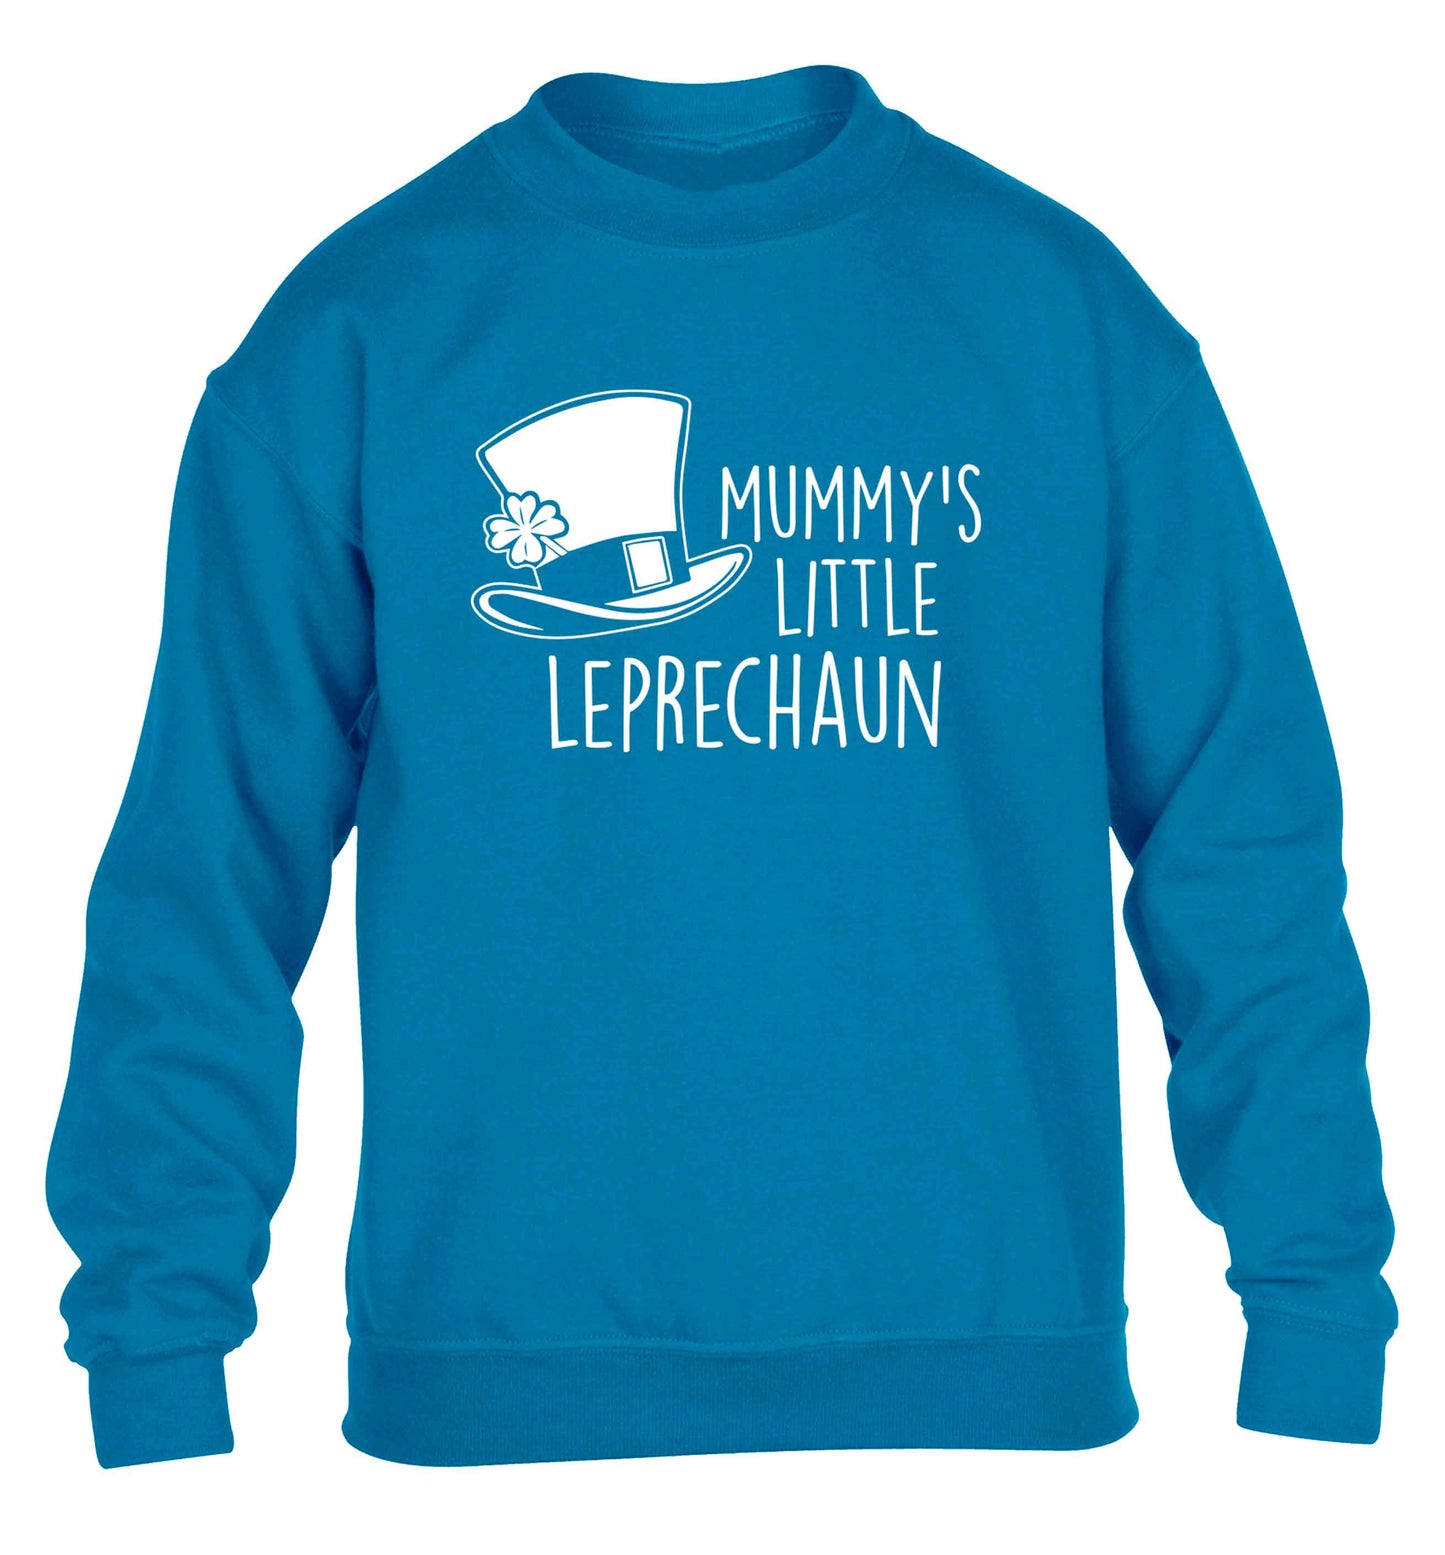 Mummy's little leprechaun children's blue sweater 12-13 Years